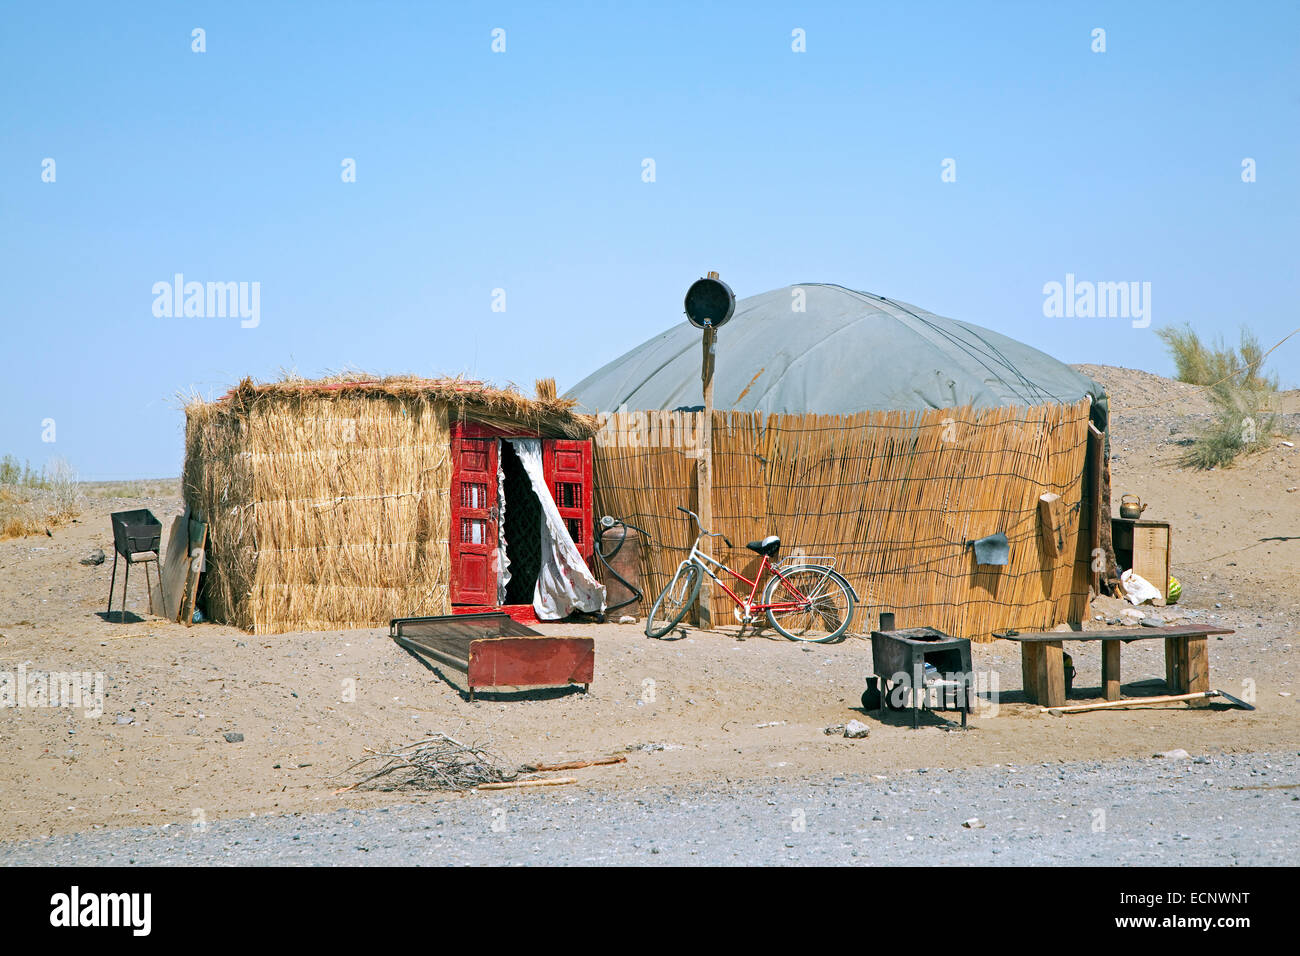 Yurta turkmena, portatile, piegate struttura abitazione tradizionalmente utilizzato dai nomadi del deserto del Karakum, Turkmenistan Foto Stock